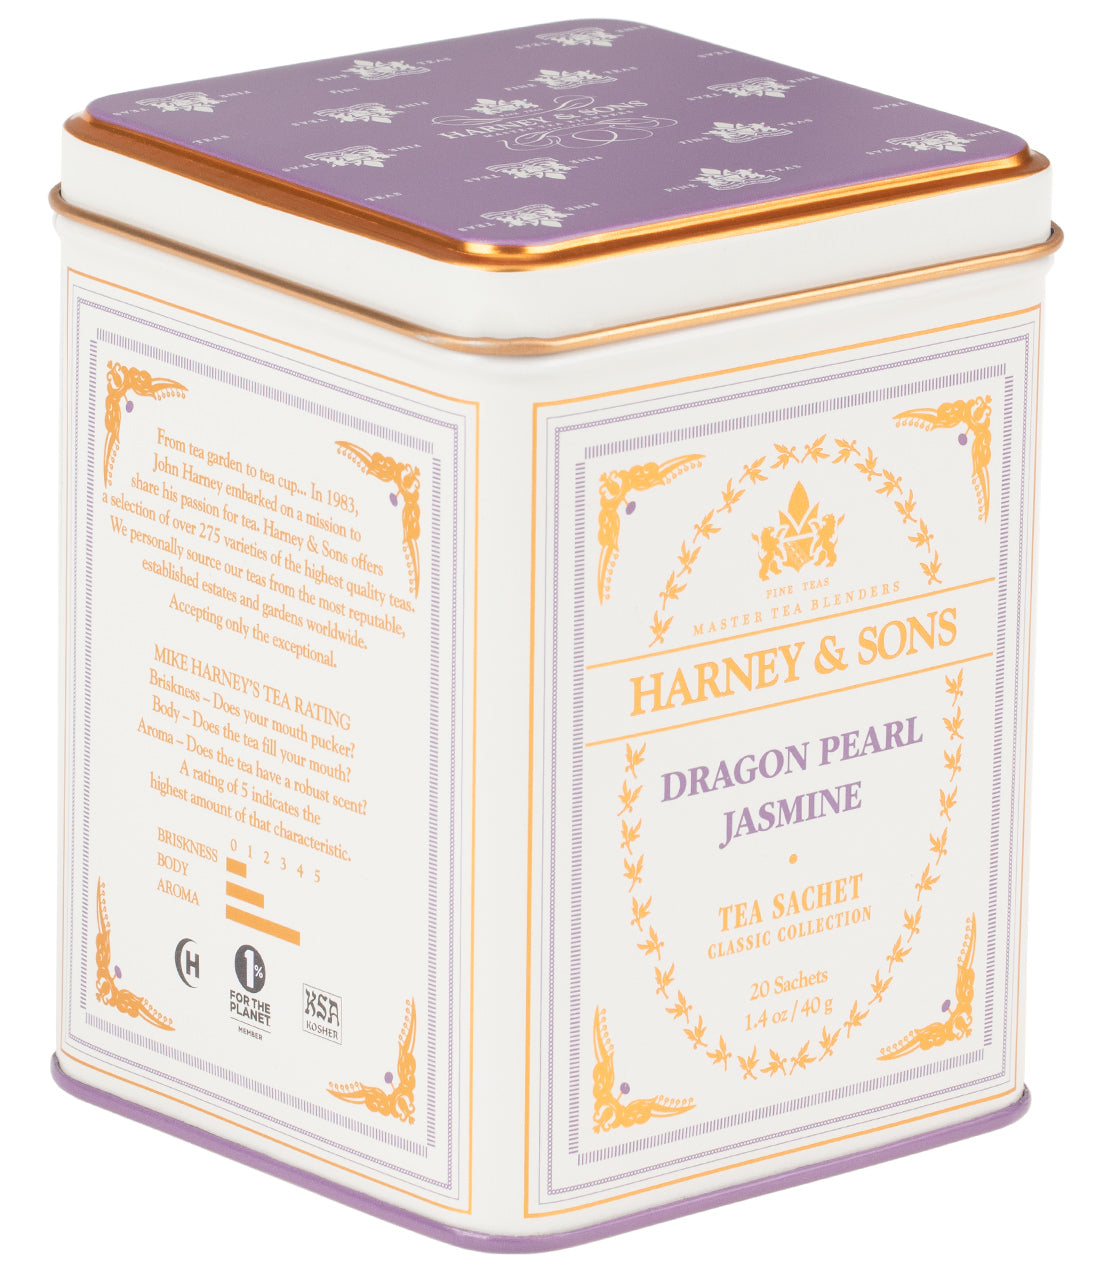 Dragon Pearl Jasmine, Classic Tin of 20 Sachets - Sachets Single Classic Tin of 20 Sachets - Harney & Sons Fine Teas